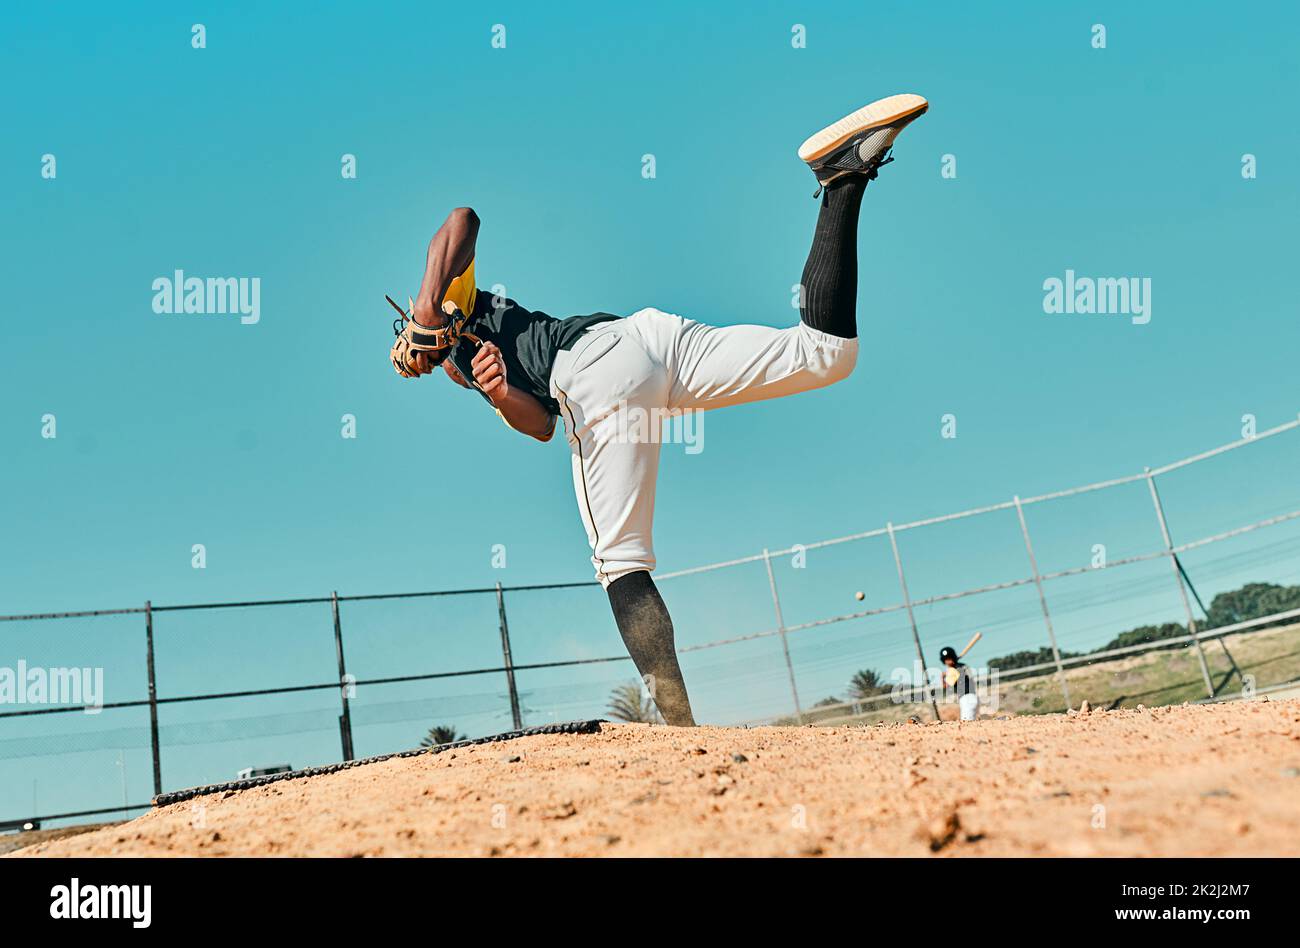 Alles, was man braucht, ist alles, was man bekommt. Aufnahme eines jungen Baseballspielers, der den Ball während eines Spiels im Freien anspielt. Stockfoto